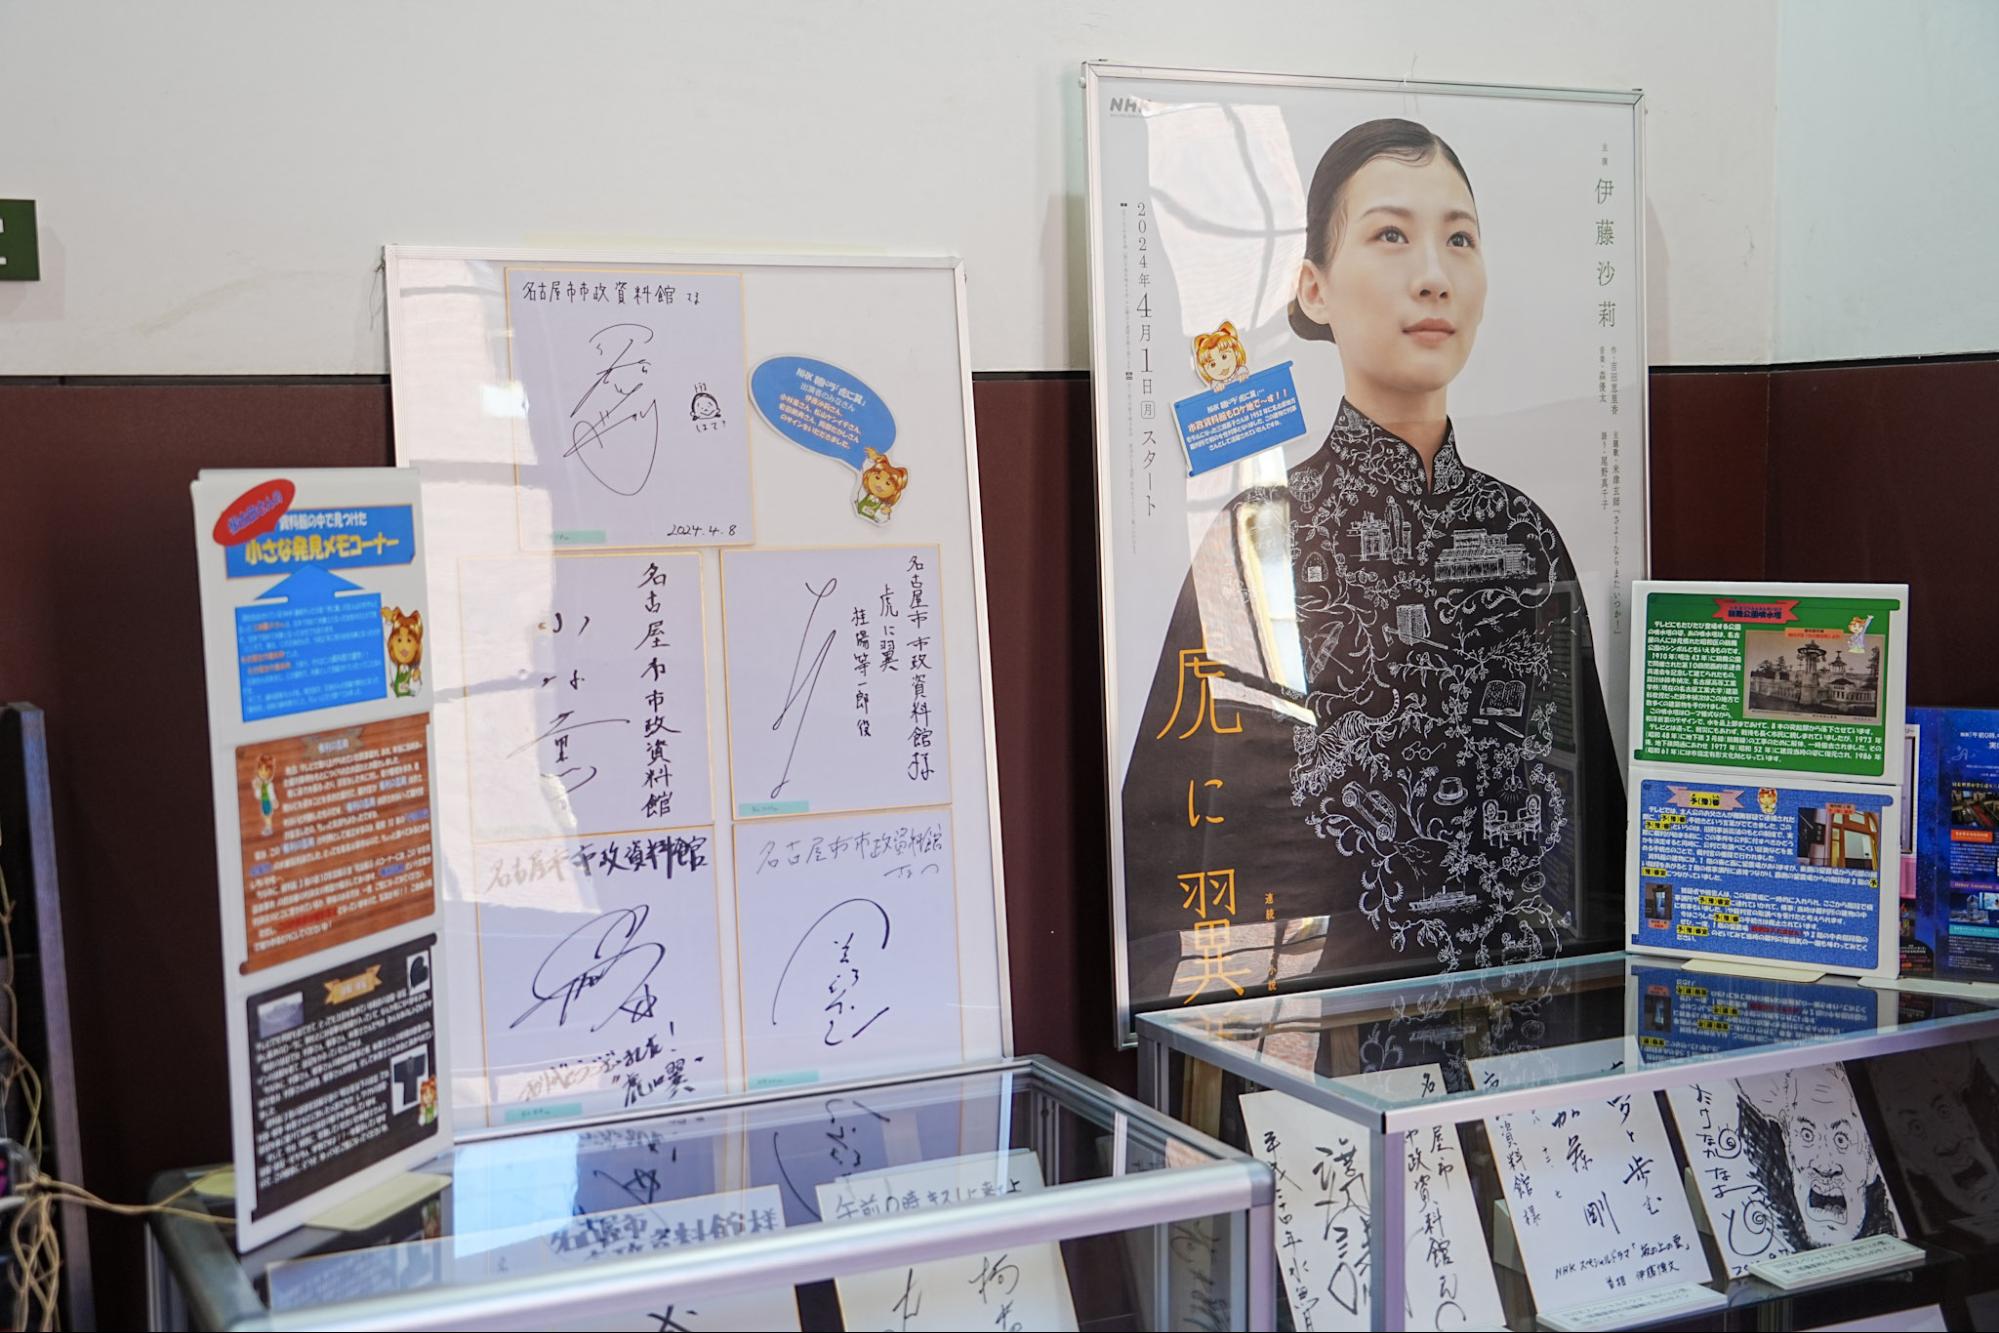 名古屋市市政資料館に展示してある出演者のサイン